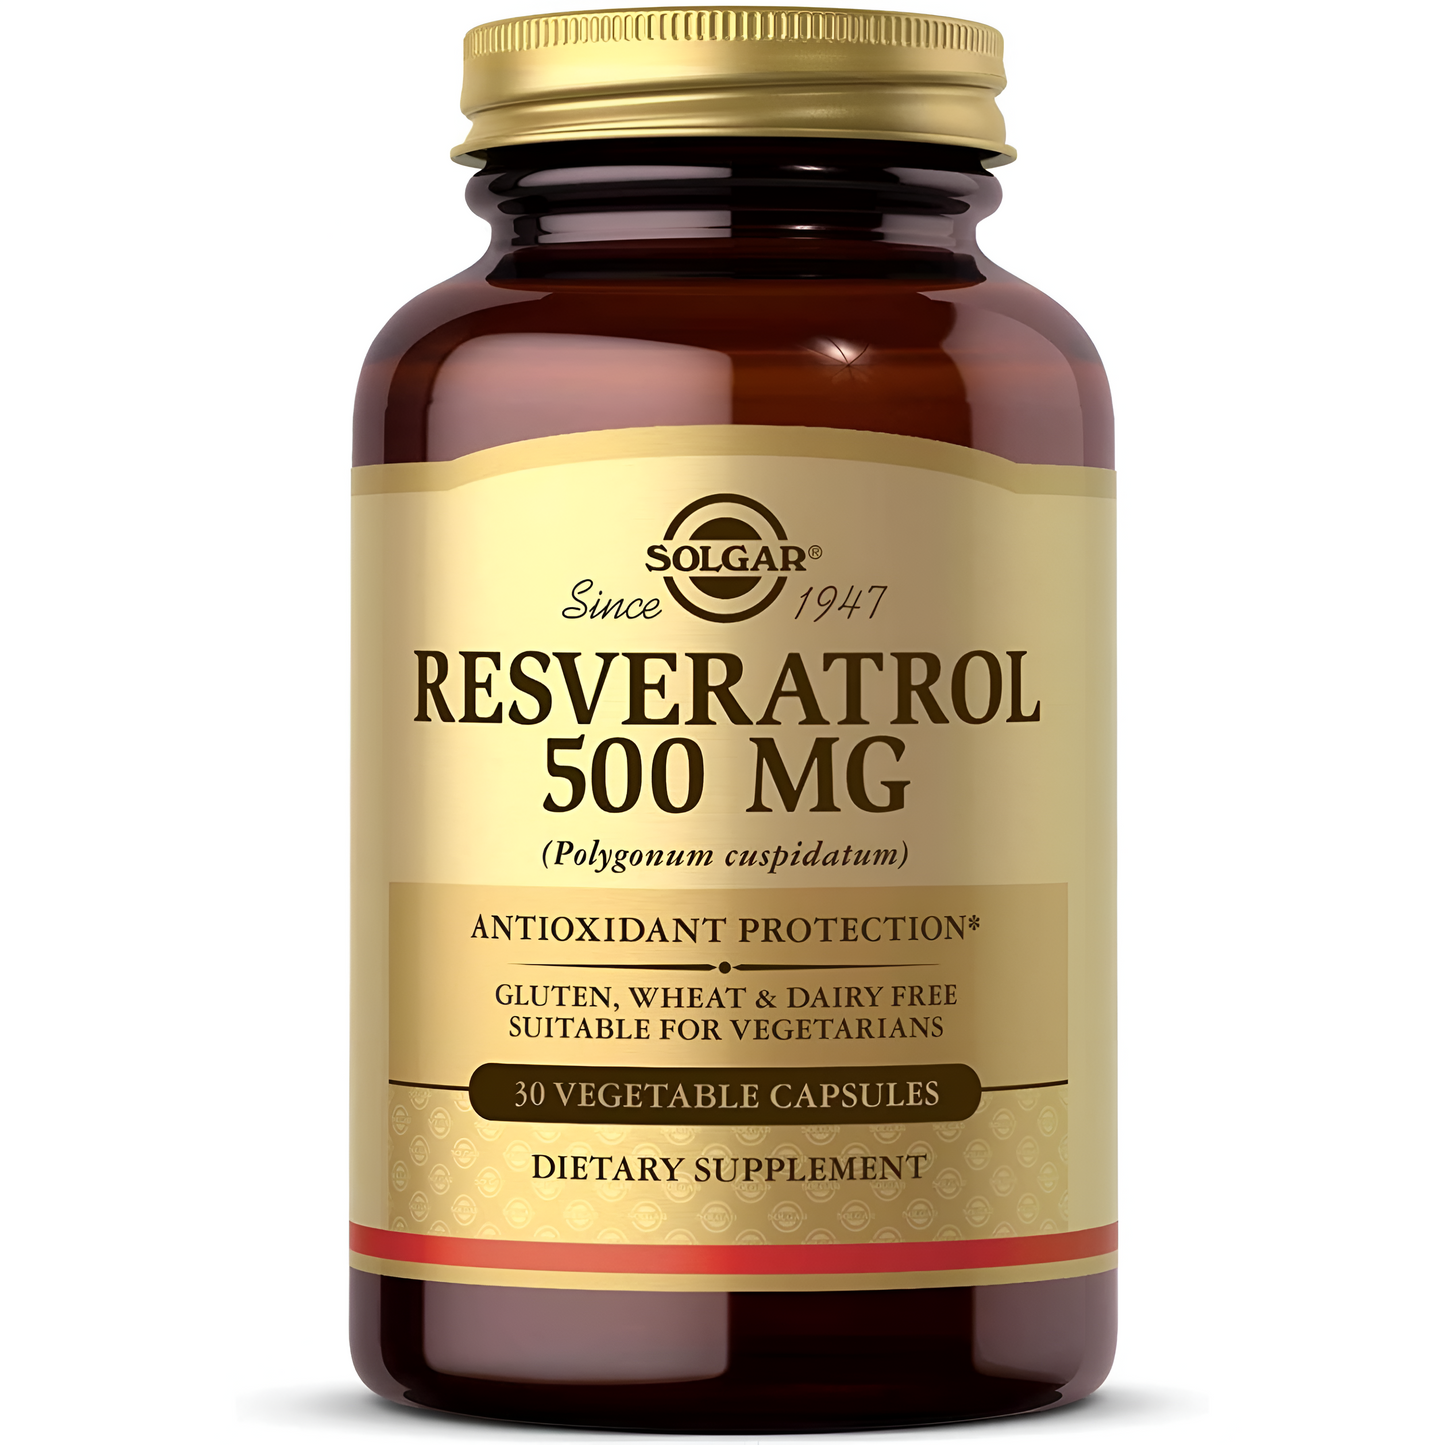 Solgar Resveratrol 500 mg, 30 cápsulas vegetales - protección antioxidante, sin gluten, sin lácteos